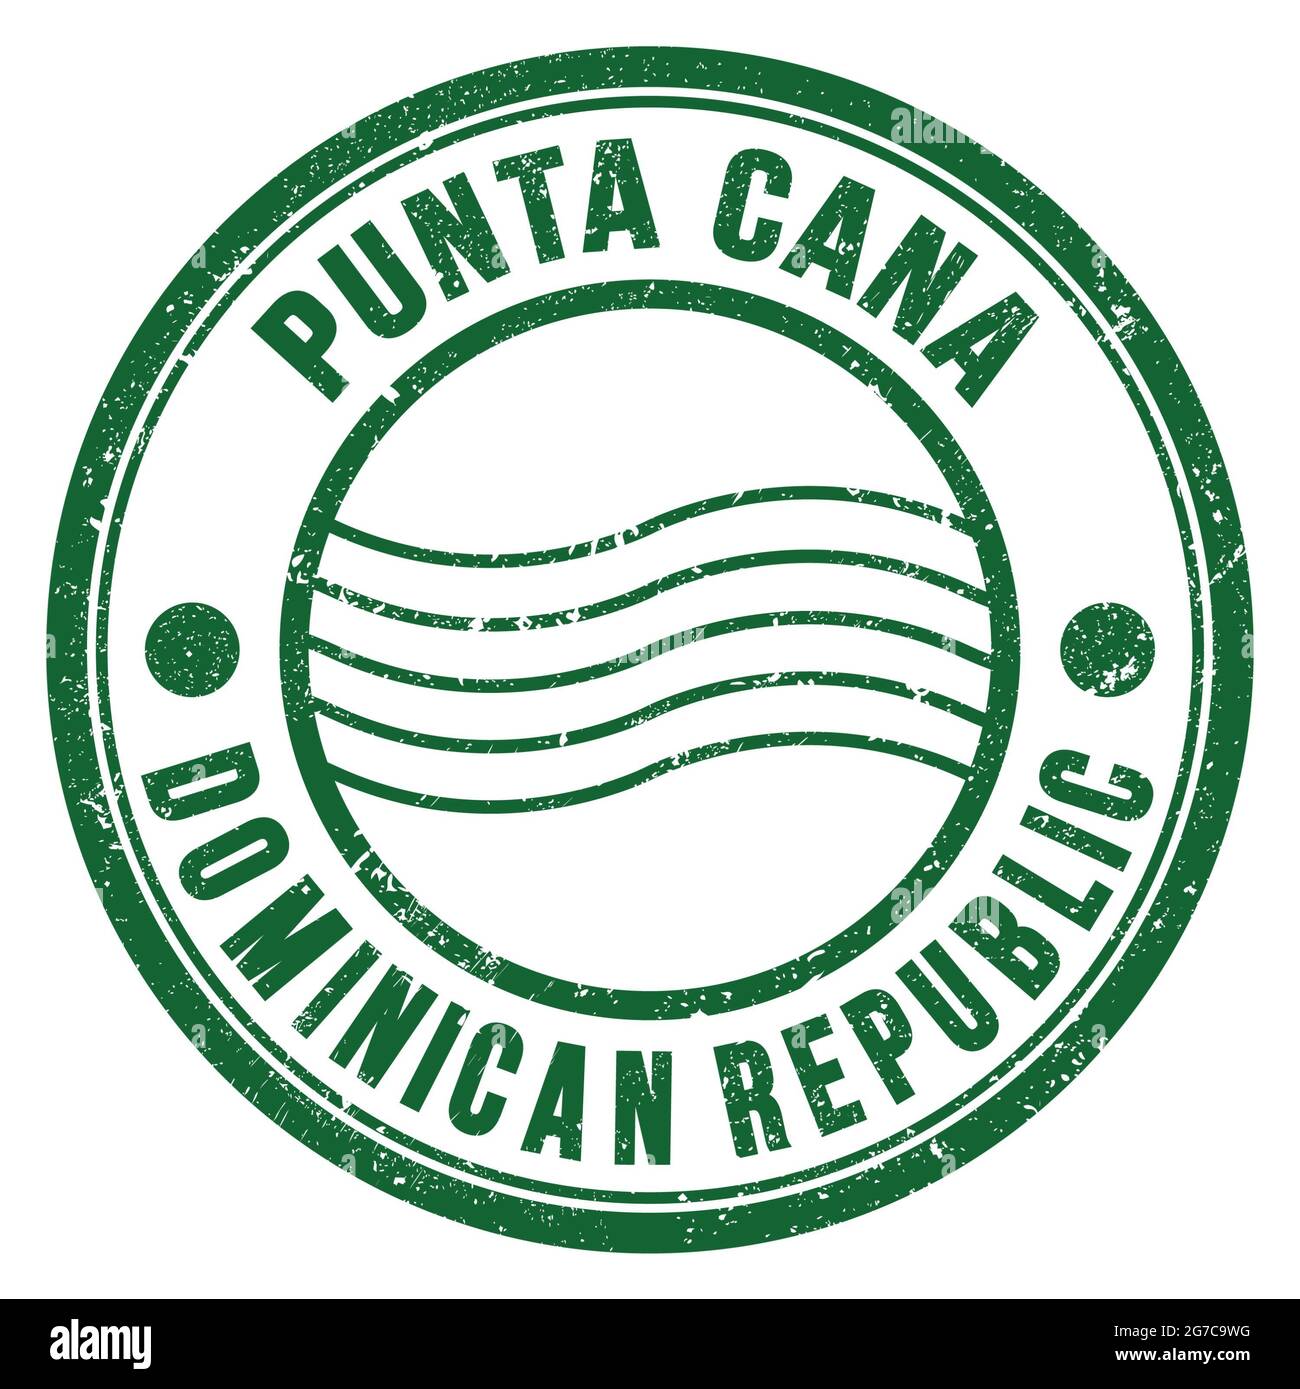 PUNTA CANA - RÉPUBLIQUE DOMINICAINE, mots écrits sur le timbre postal rond vert Banque D'Images